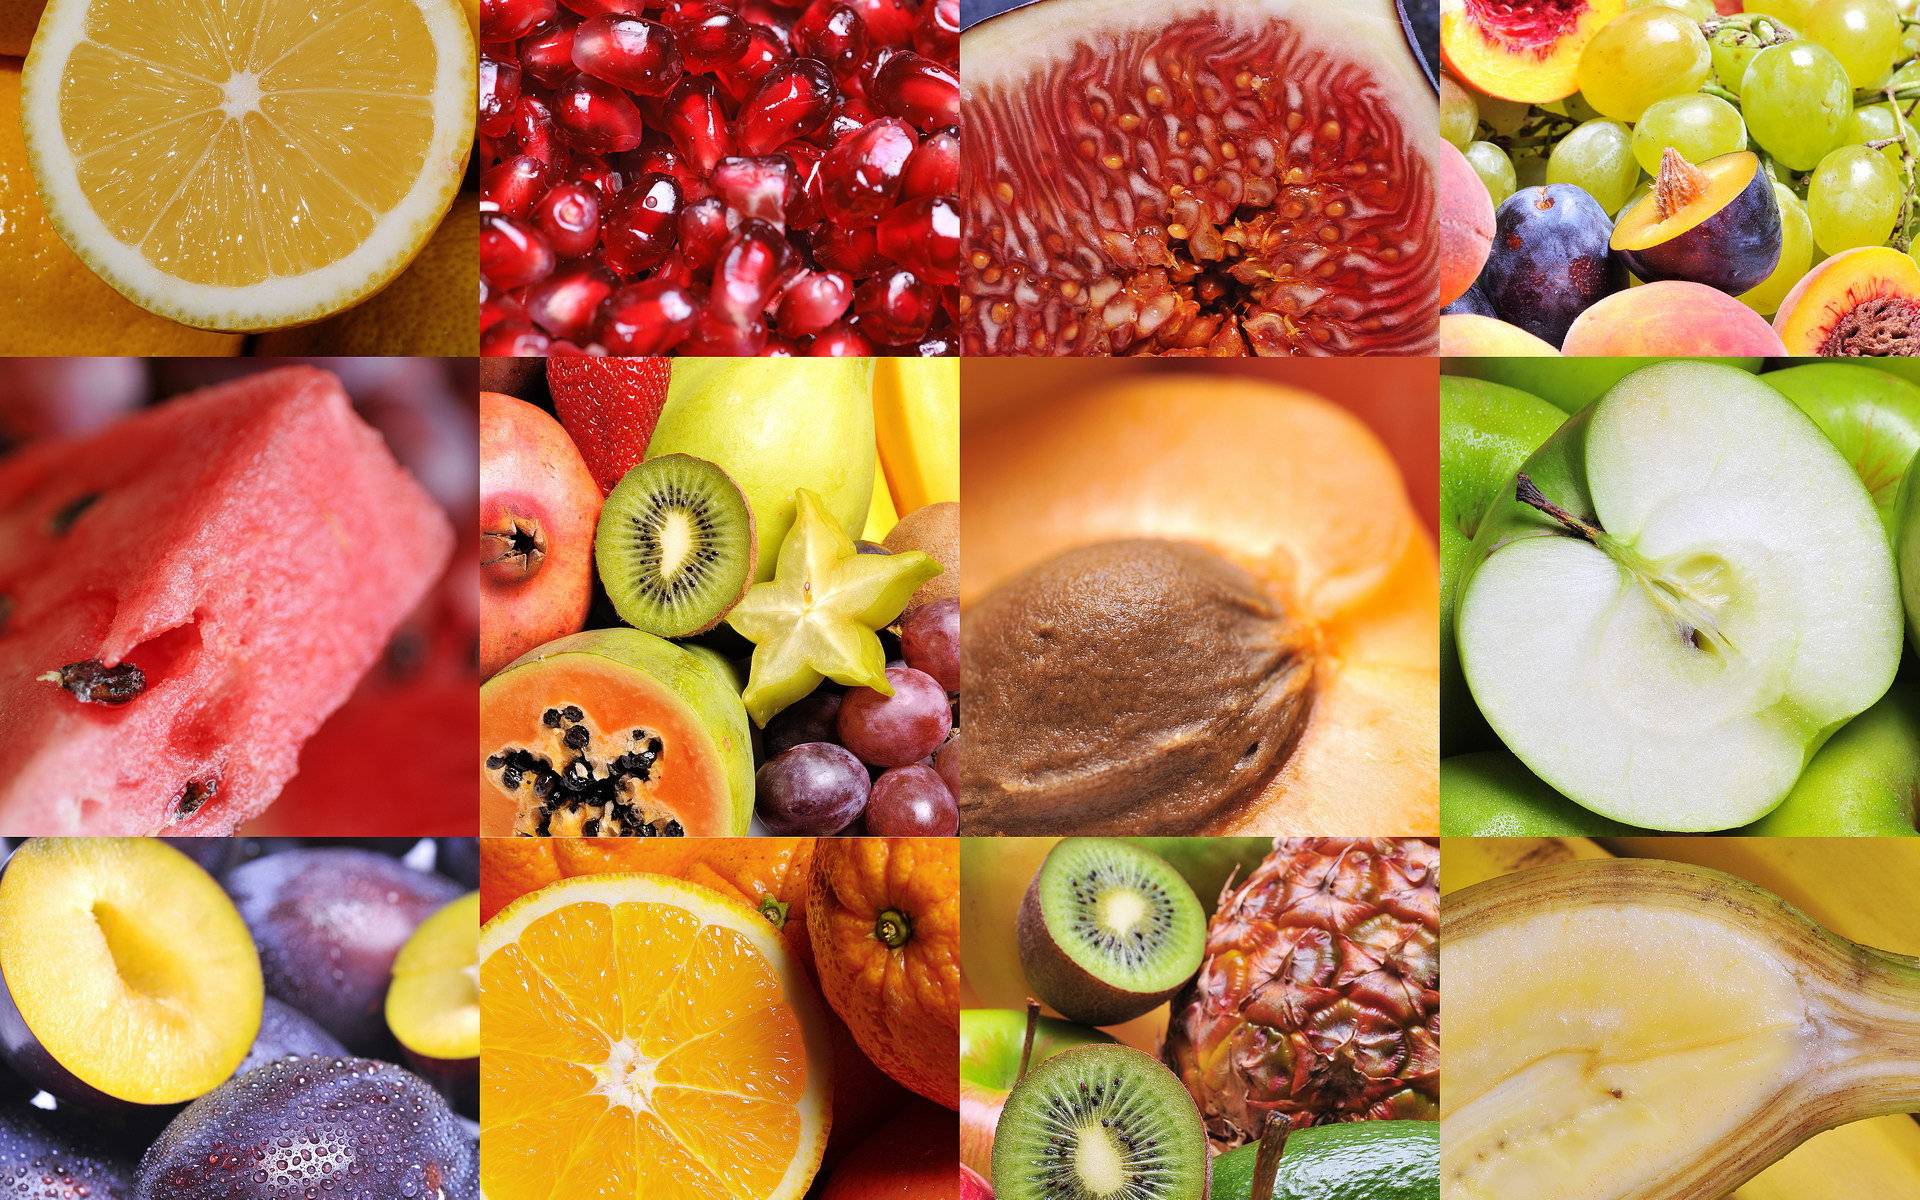 А вы знаете какие фрукты самые полезные? фрукты для здоровья!